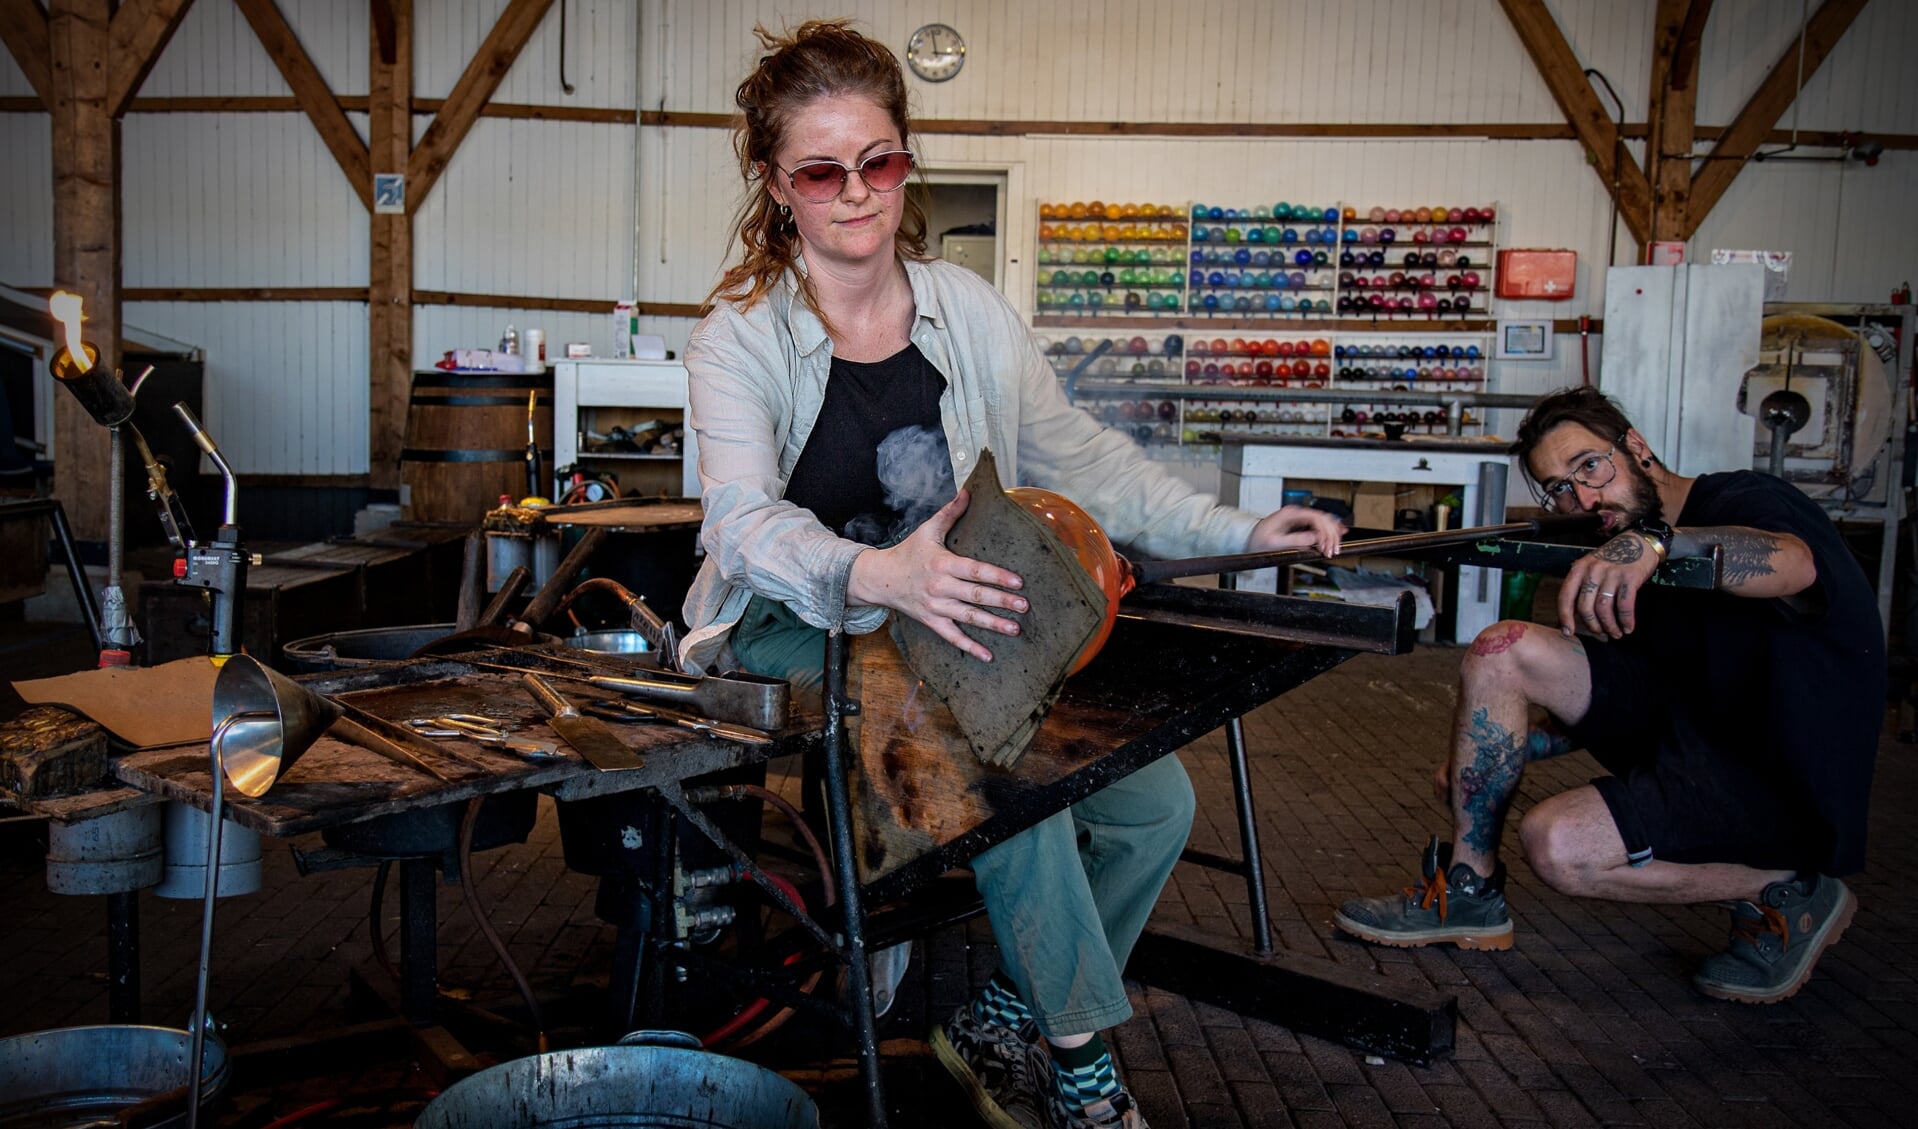 De eerste in de reeks is een portret van glasblazer Michelle Veldman.